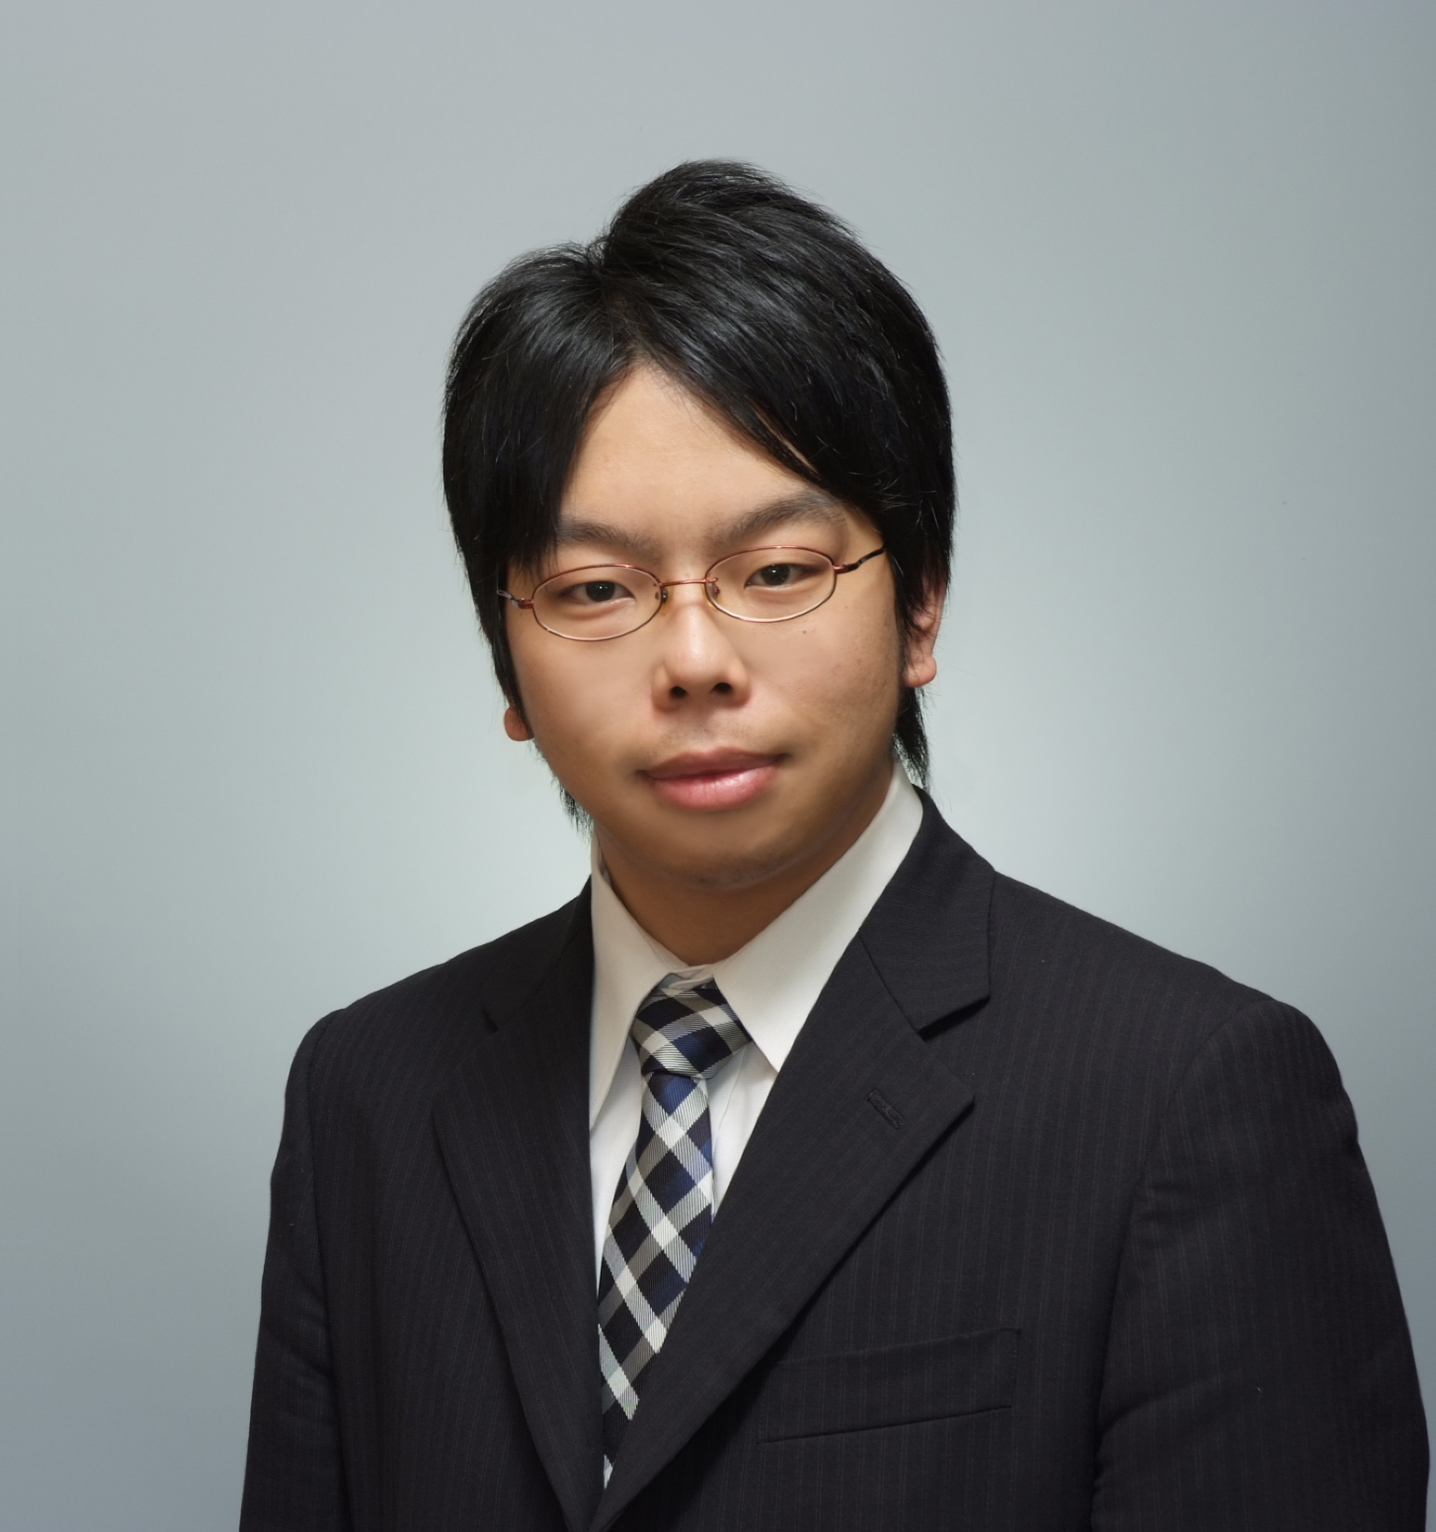 Mr. Yoshiki Kotani